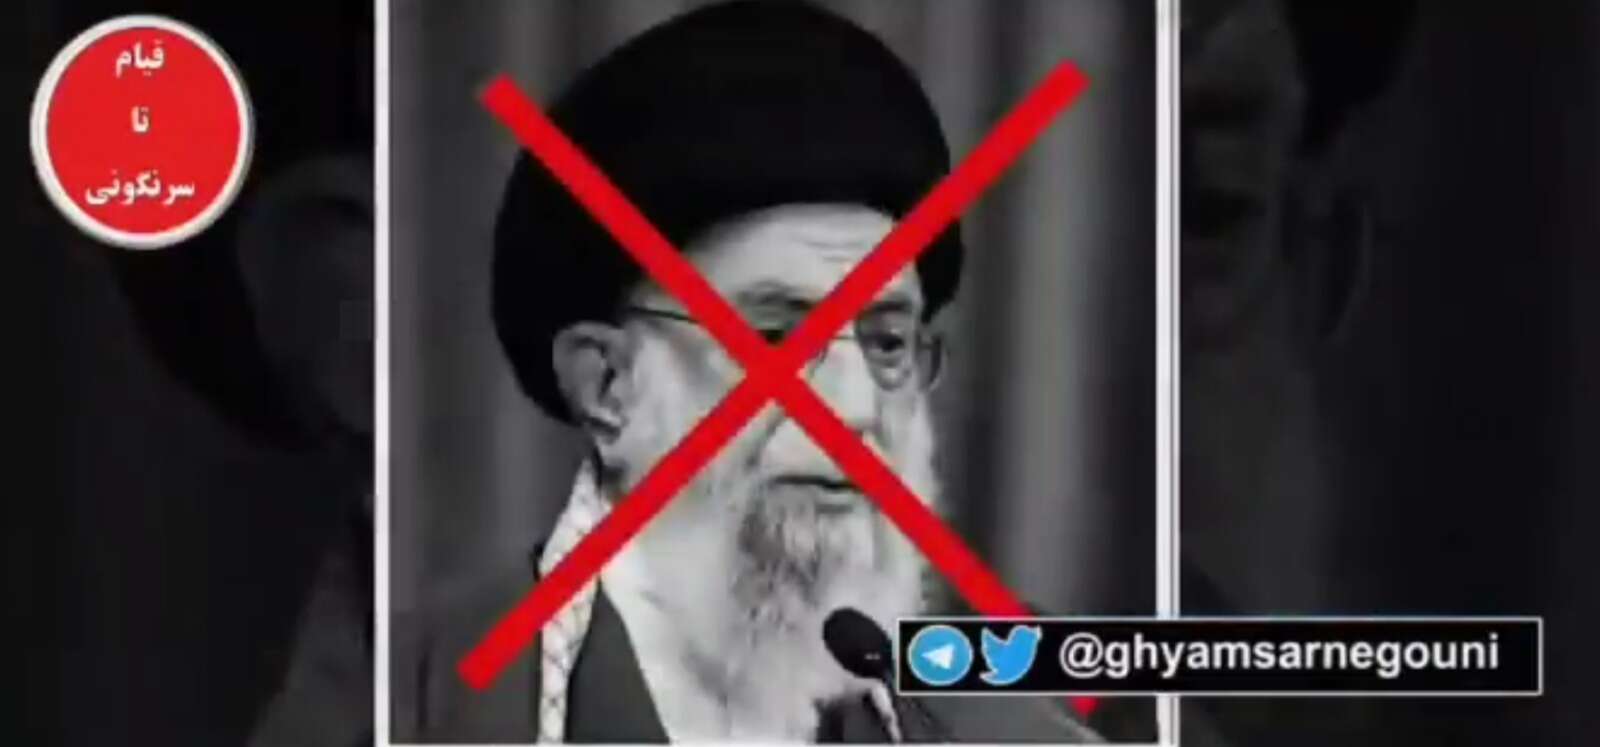 מבוכה למשטר באיראן: ערוץ הטלוויזיה הממלכתי נפרץ ושידר קריאות לרצח המנהיג העליון